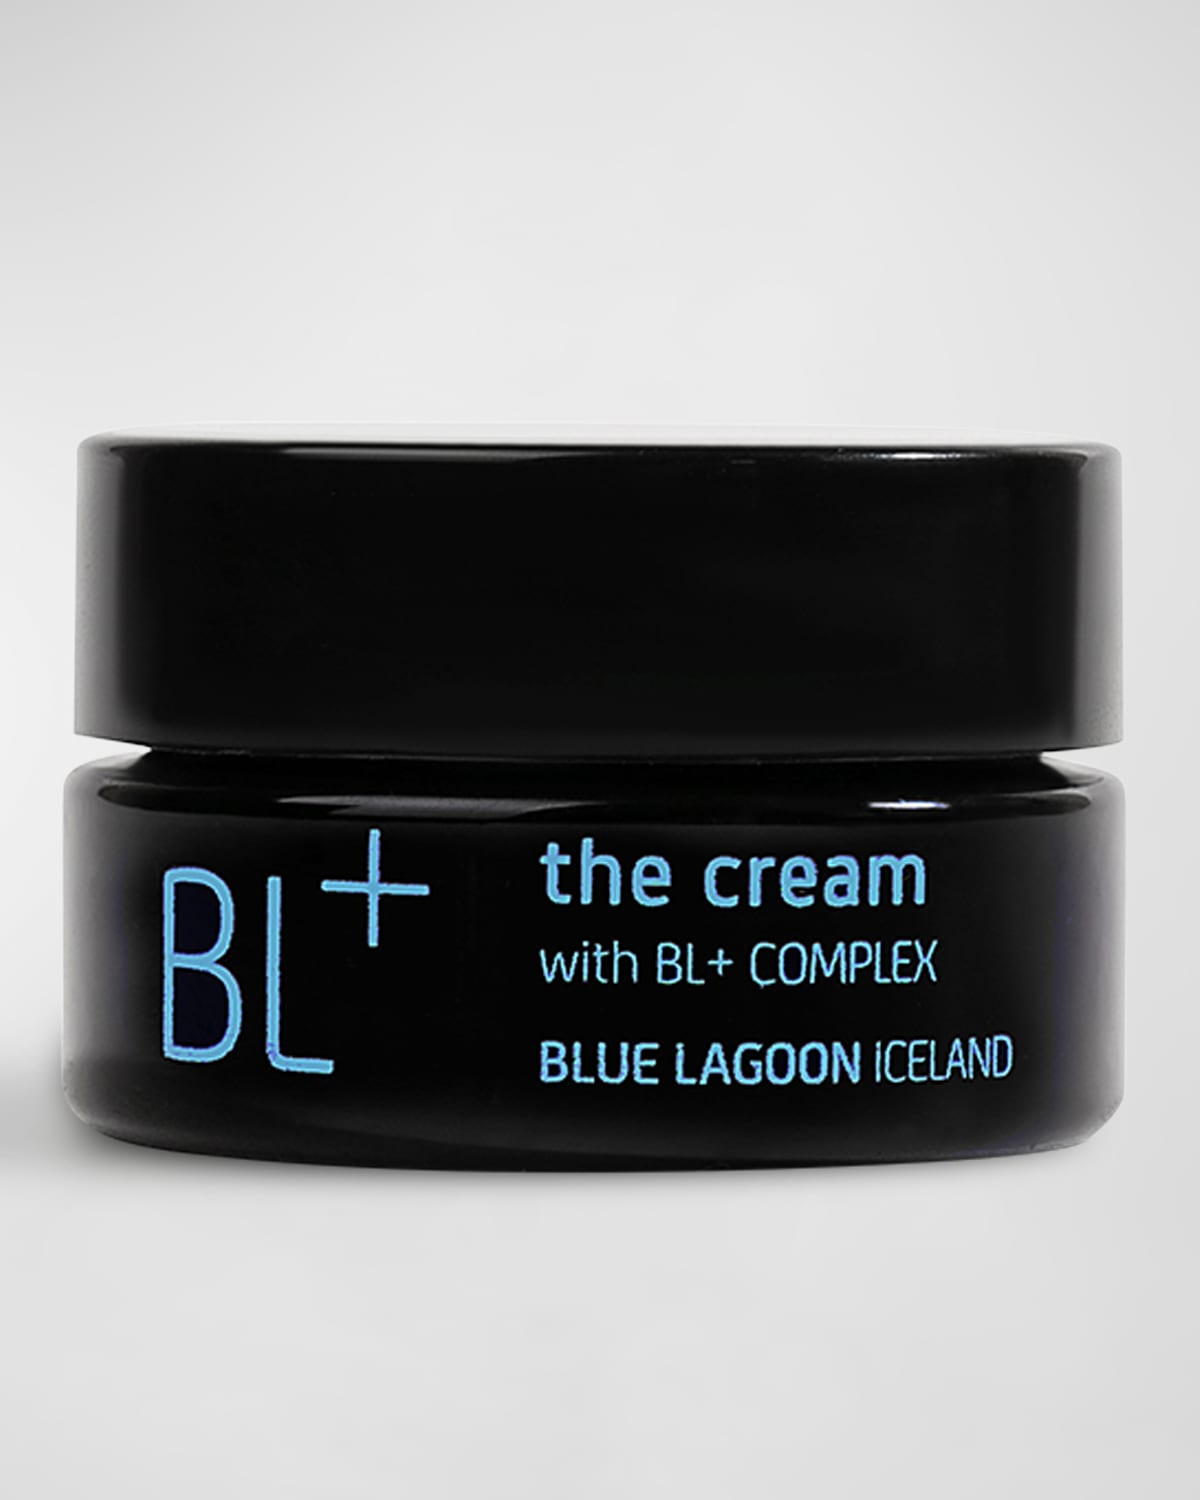 Blue Lagoon Iceland BL+ The Cream, 0.5 oz.